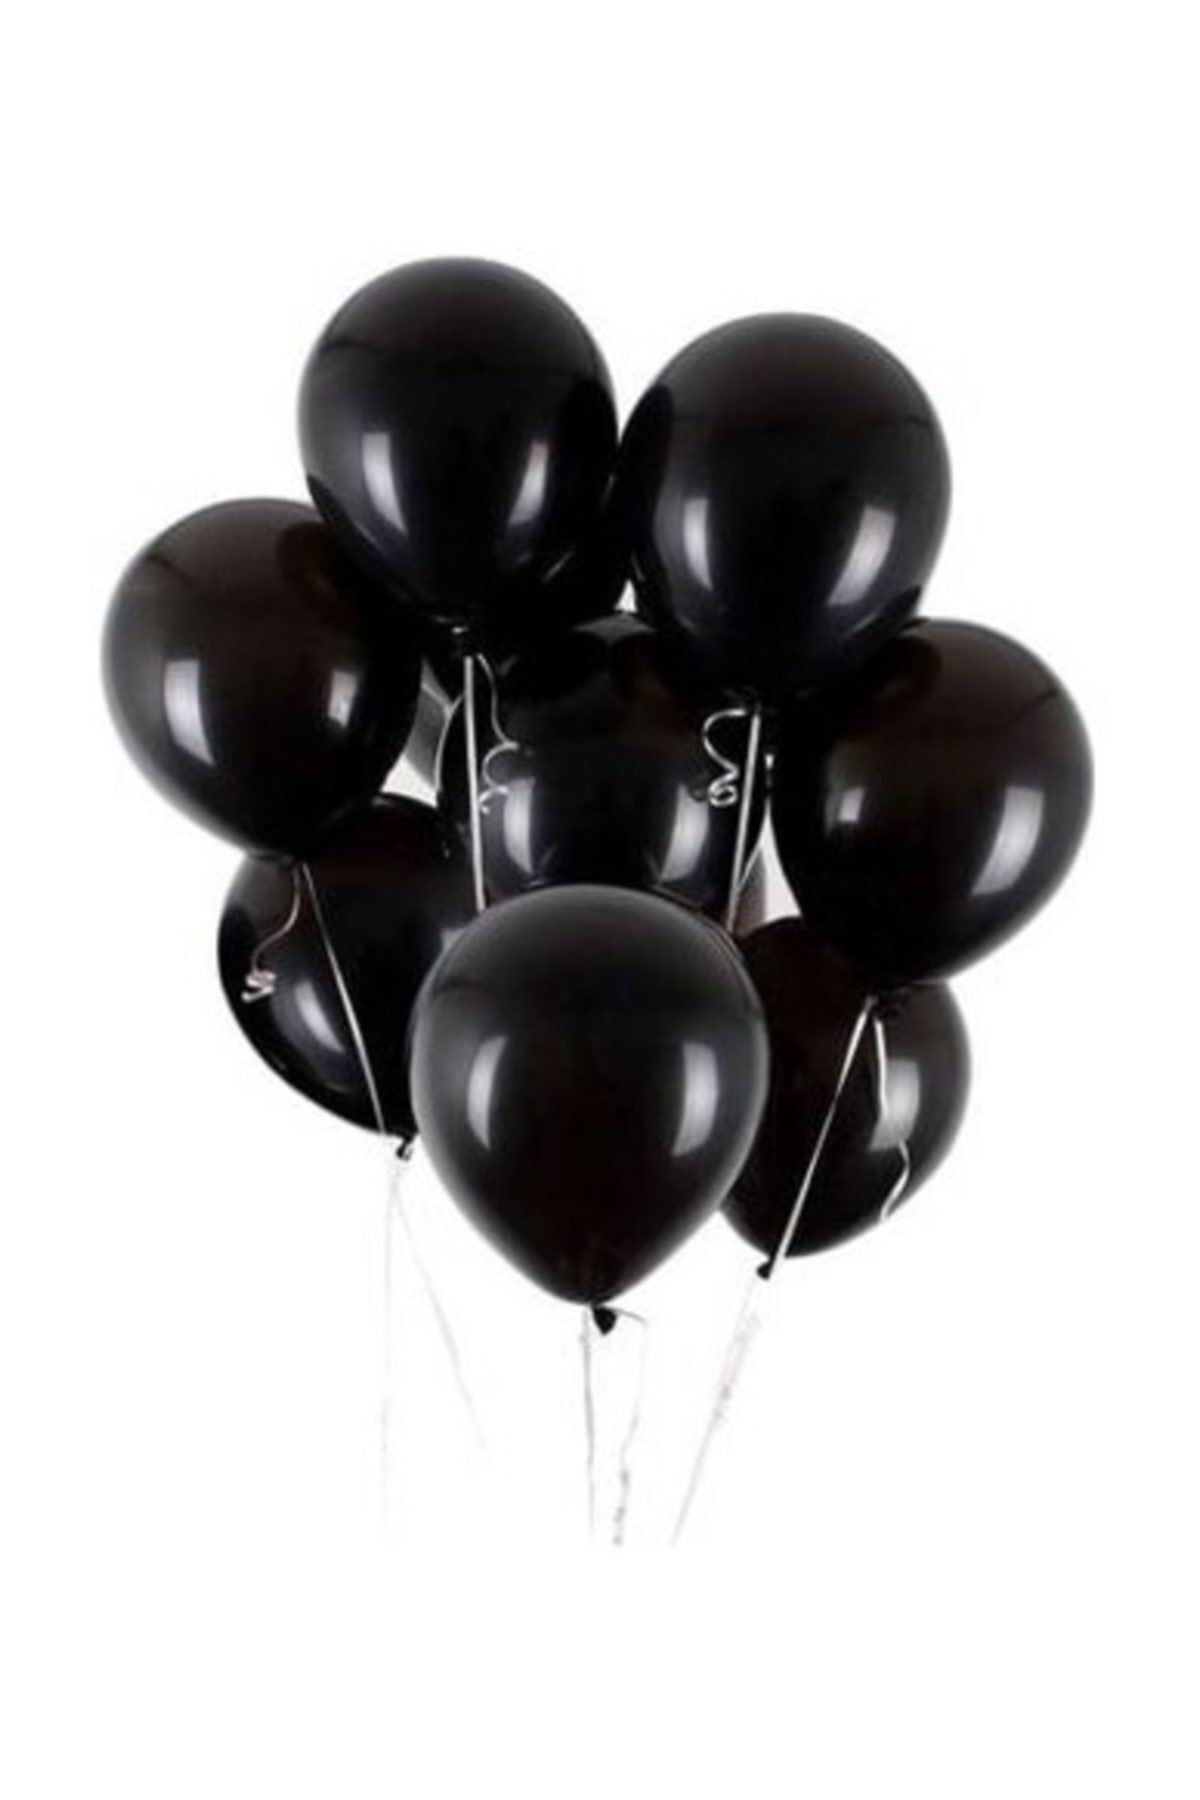 Cansüs Siyah Metalik Balon 12 Inç 10 Adet